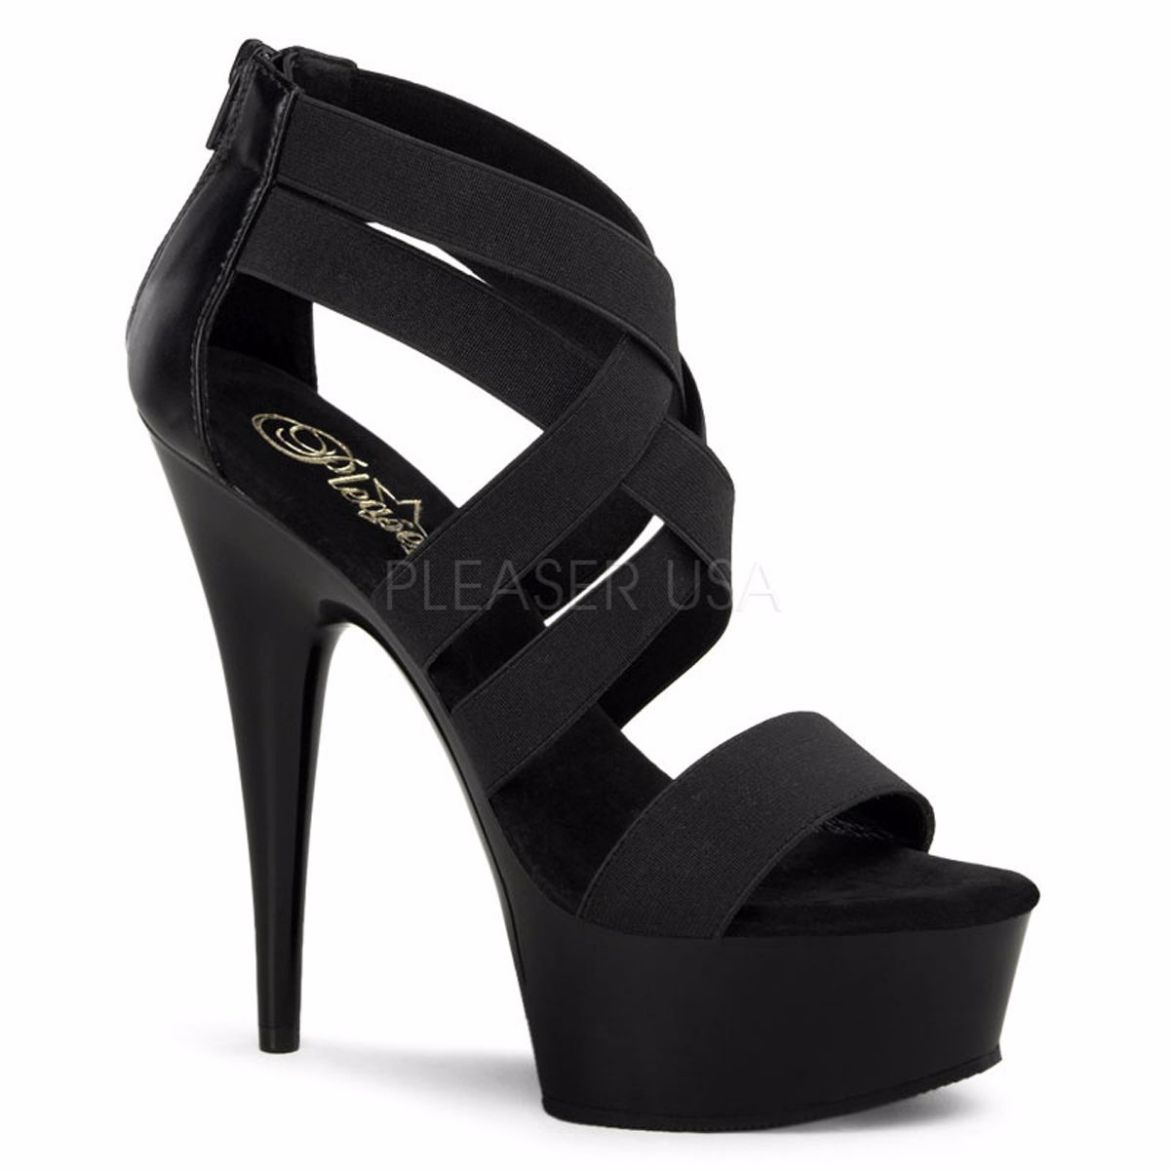 Product image of Pleaser Delight-669 Black Elastic Band/Black, 6 inch (15.2 cm) Heel, 1 3/4 inch (4.4 cm) Platform Sandal Shoes